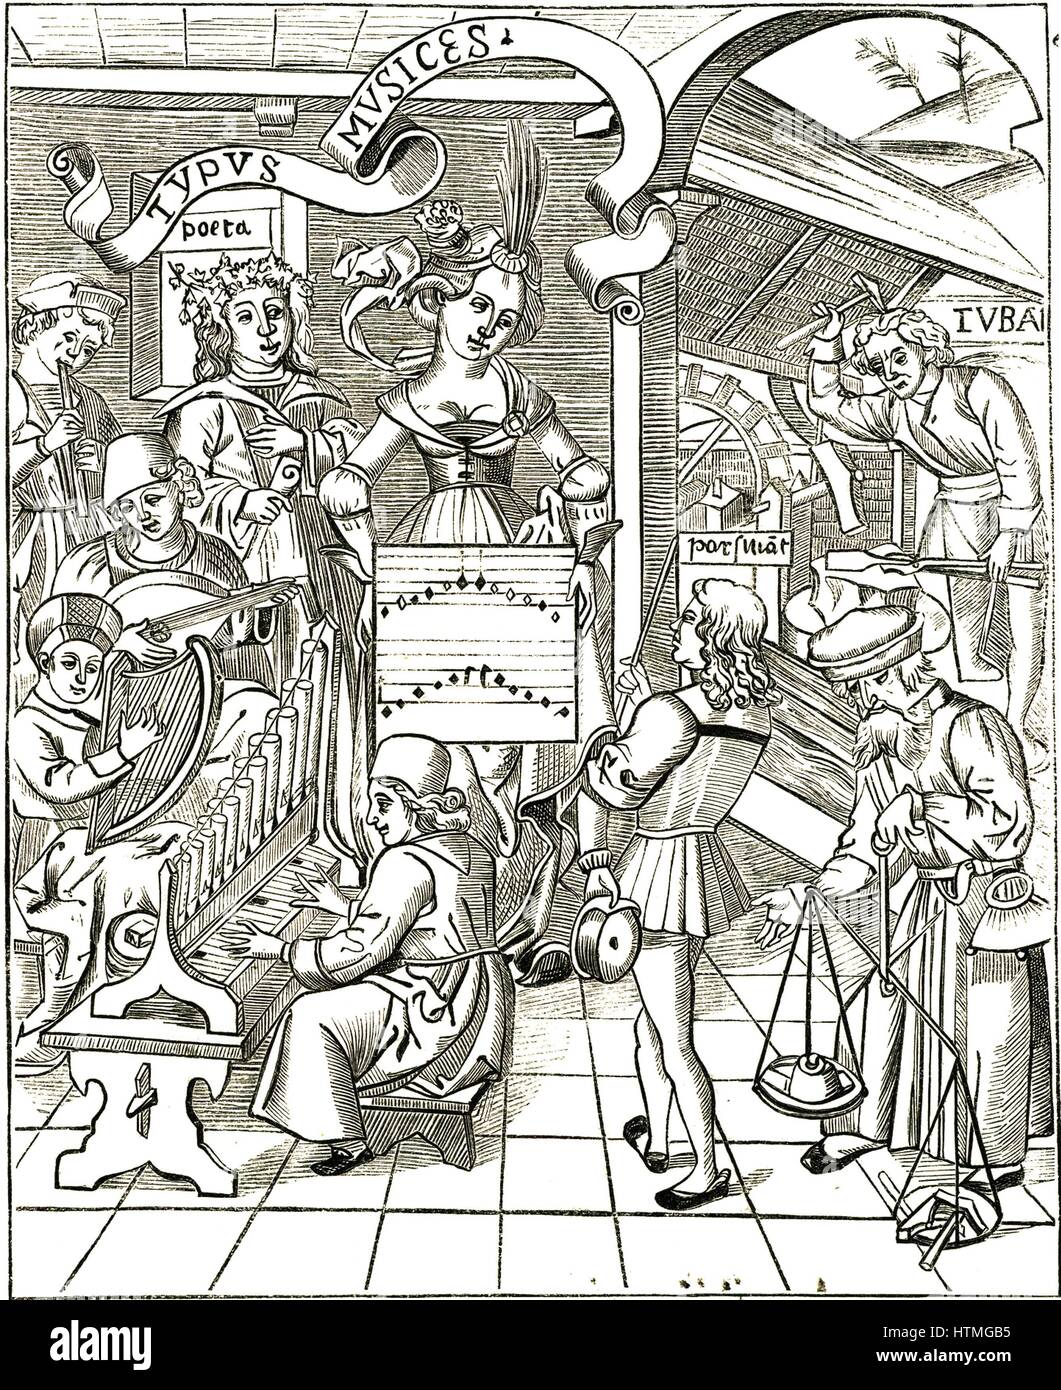 La personnification de la musique de Gregor Reisch 'Margarita' Philosophica, Strasbourg, 1508. Au premier plan à gauche l'homme joue un orgue portatif, au-dessus de lui est un homme jouant un ou clarsach harpe celtique, au-dessus de lui un luth comme instrument est joué. Haut à gauche un garçon joue le tuyau. Banque D'Images